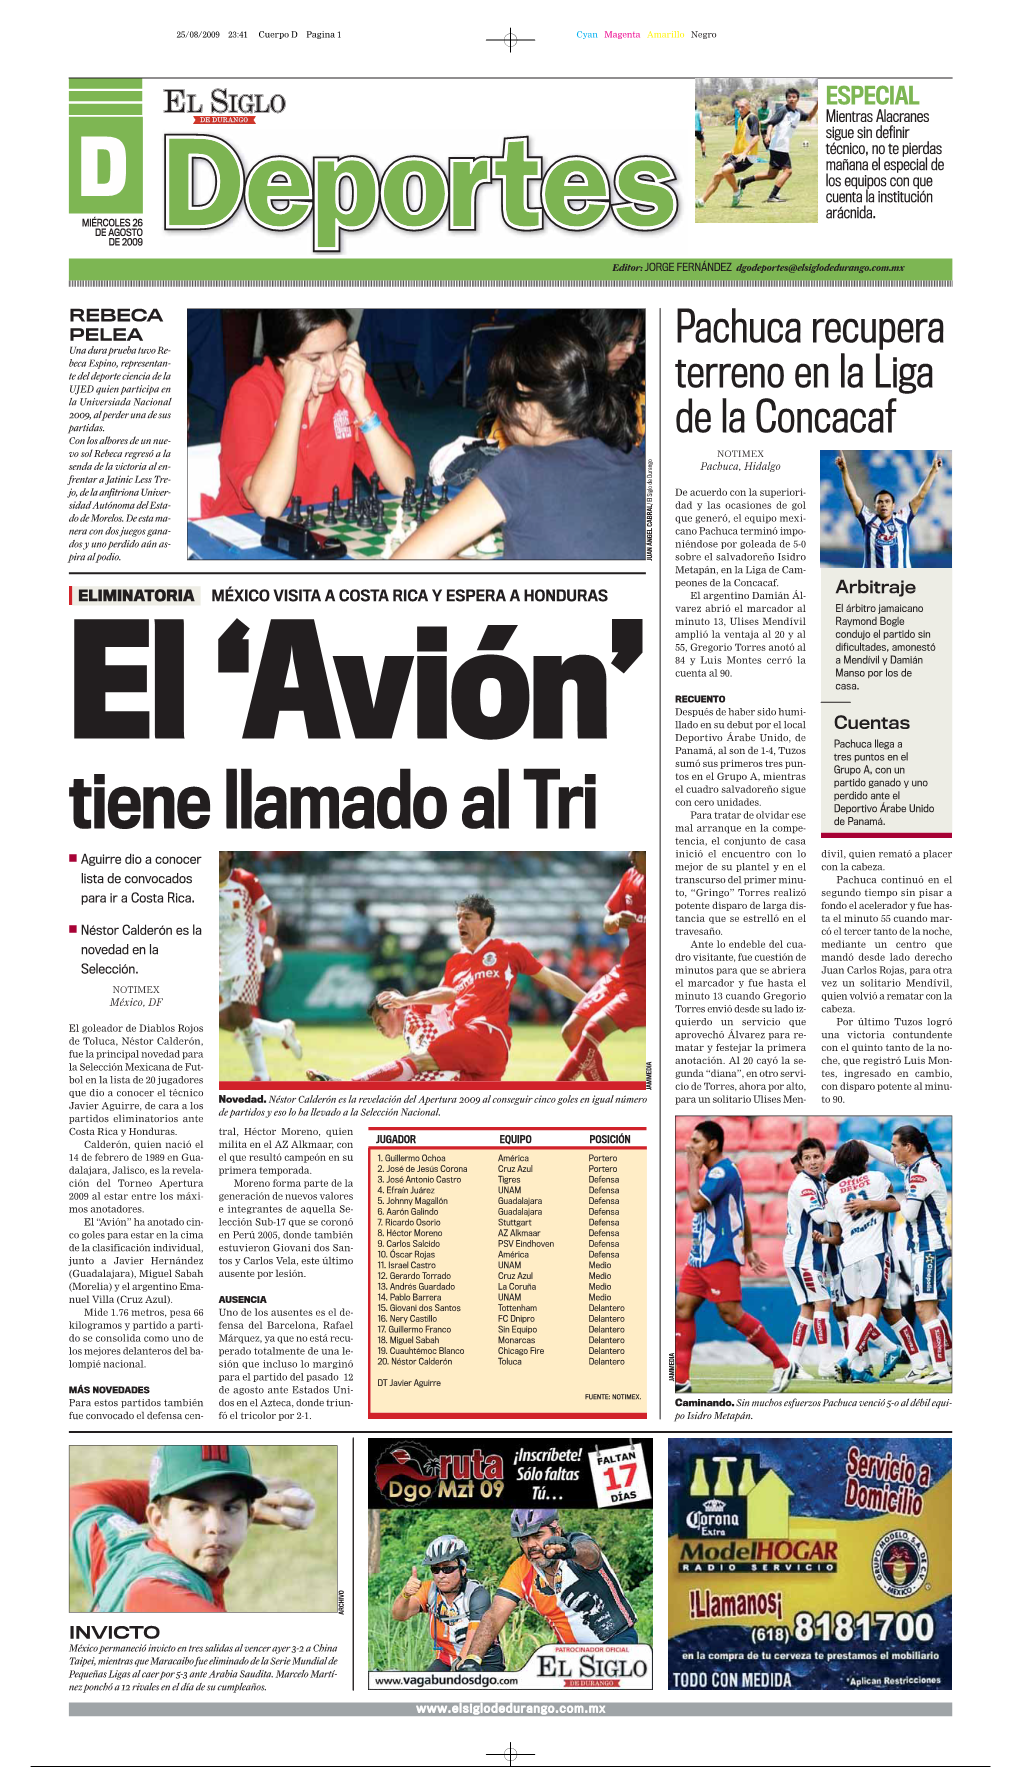 Pachuca Recupera Terreno En La Liga De La Concacaf